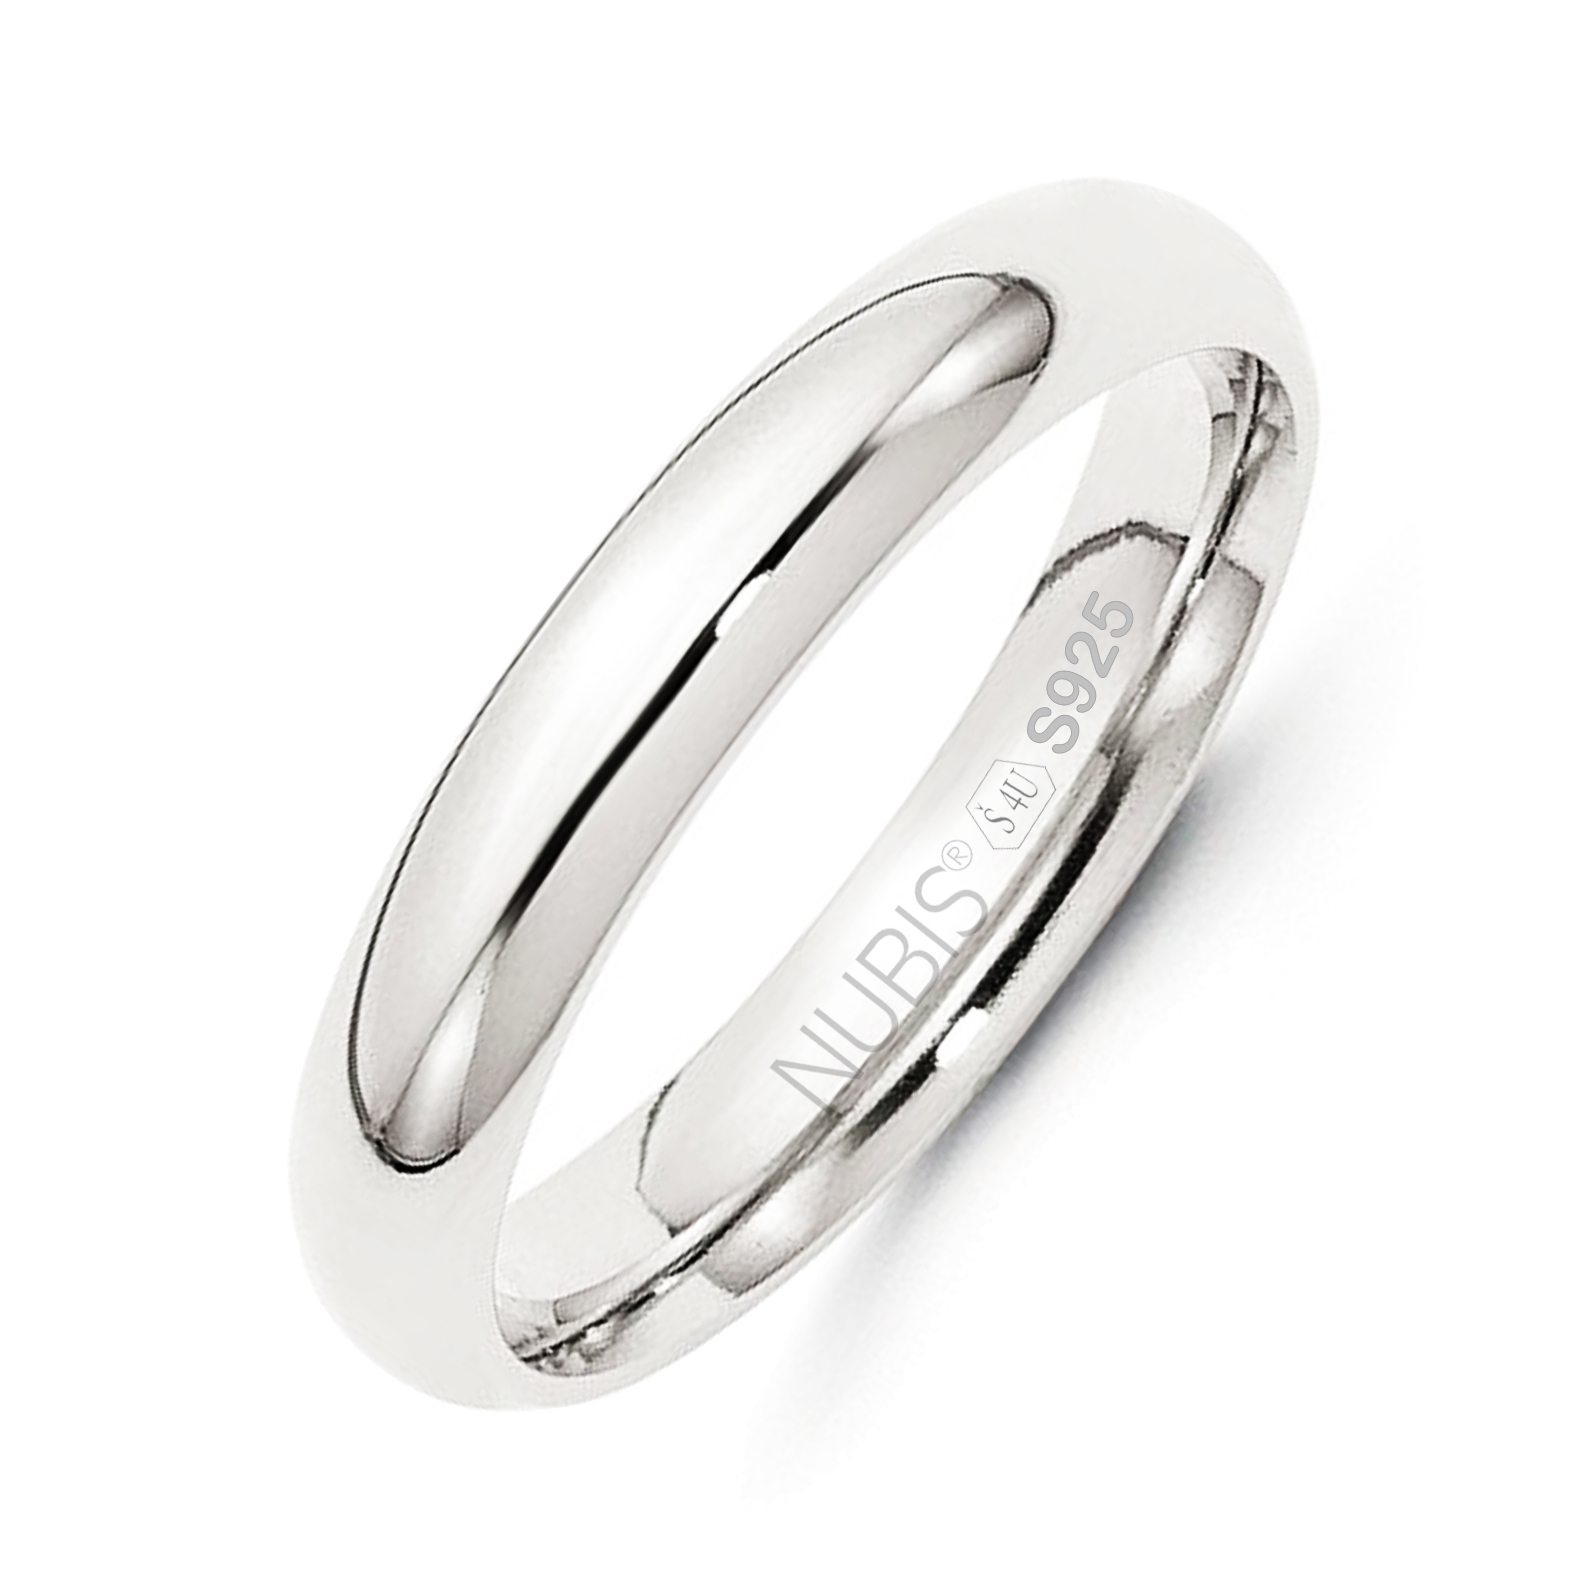 NUBIS® NB101-4 Stříbrný snubní prsten šíře 4 mm - velikost 51 - NB101-4-51